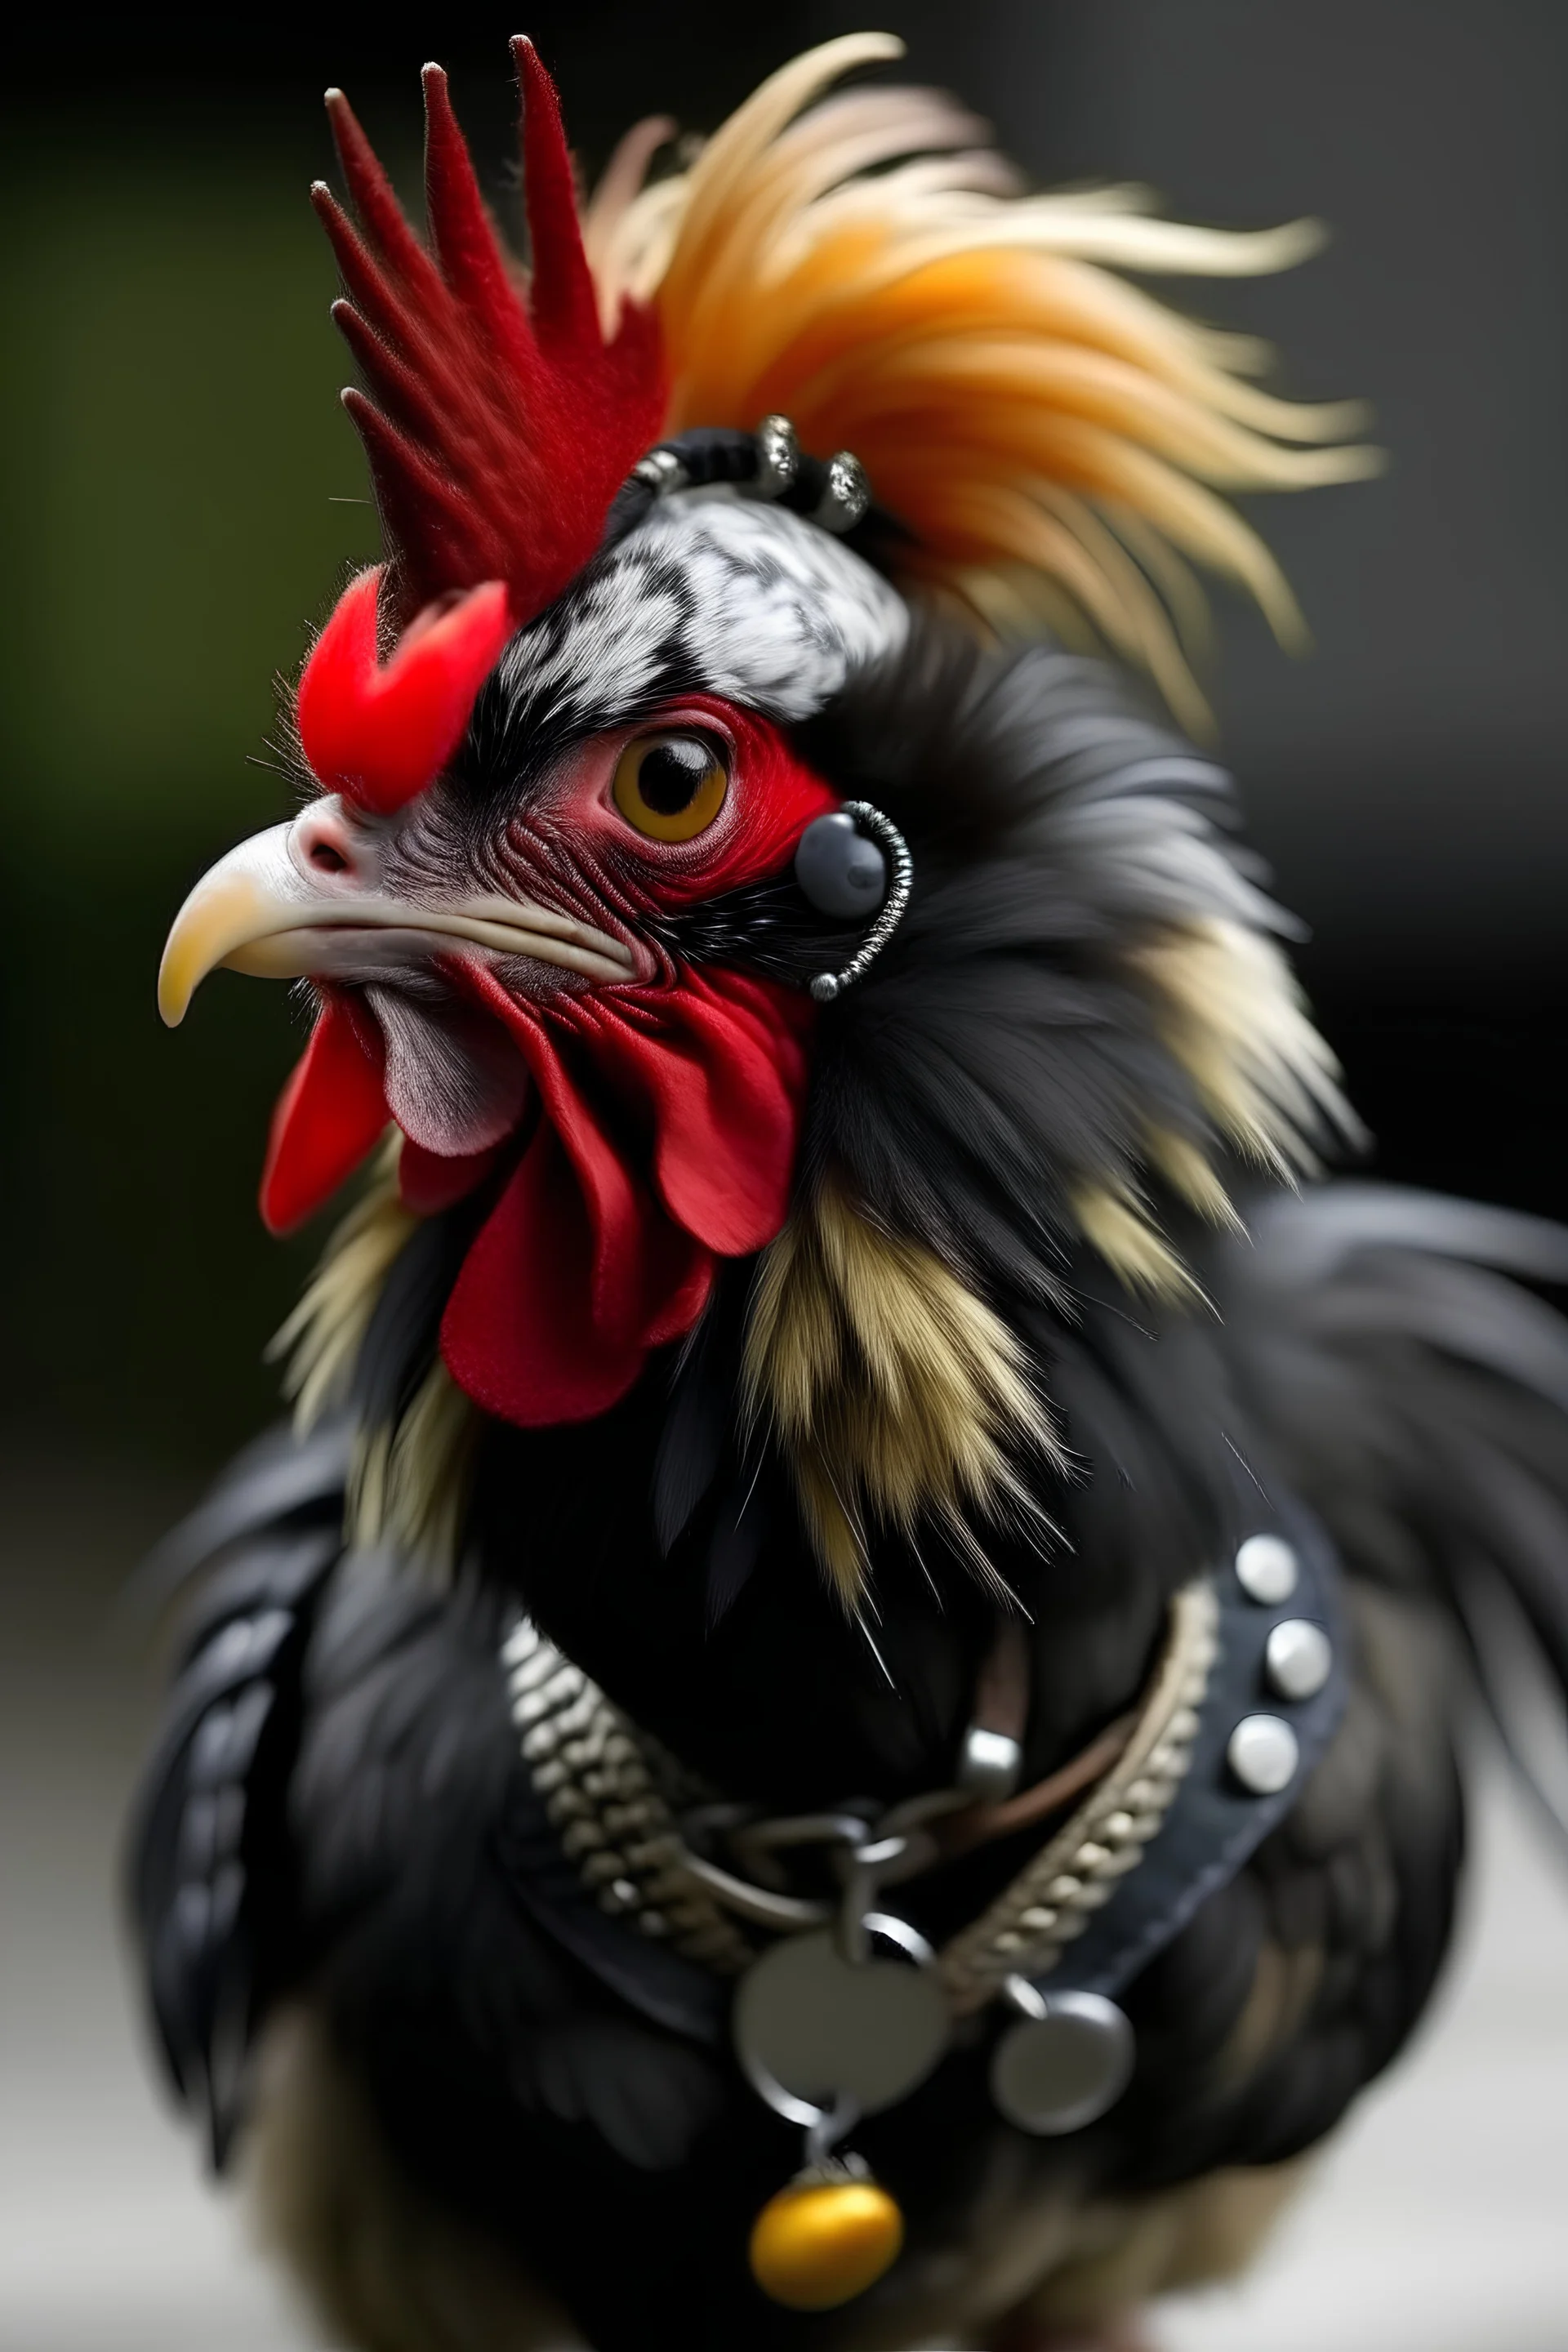 Punk chicken